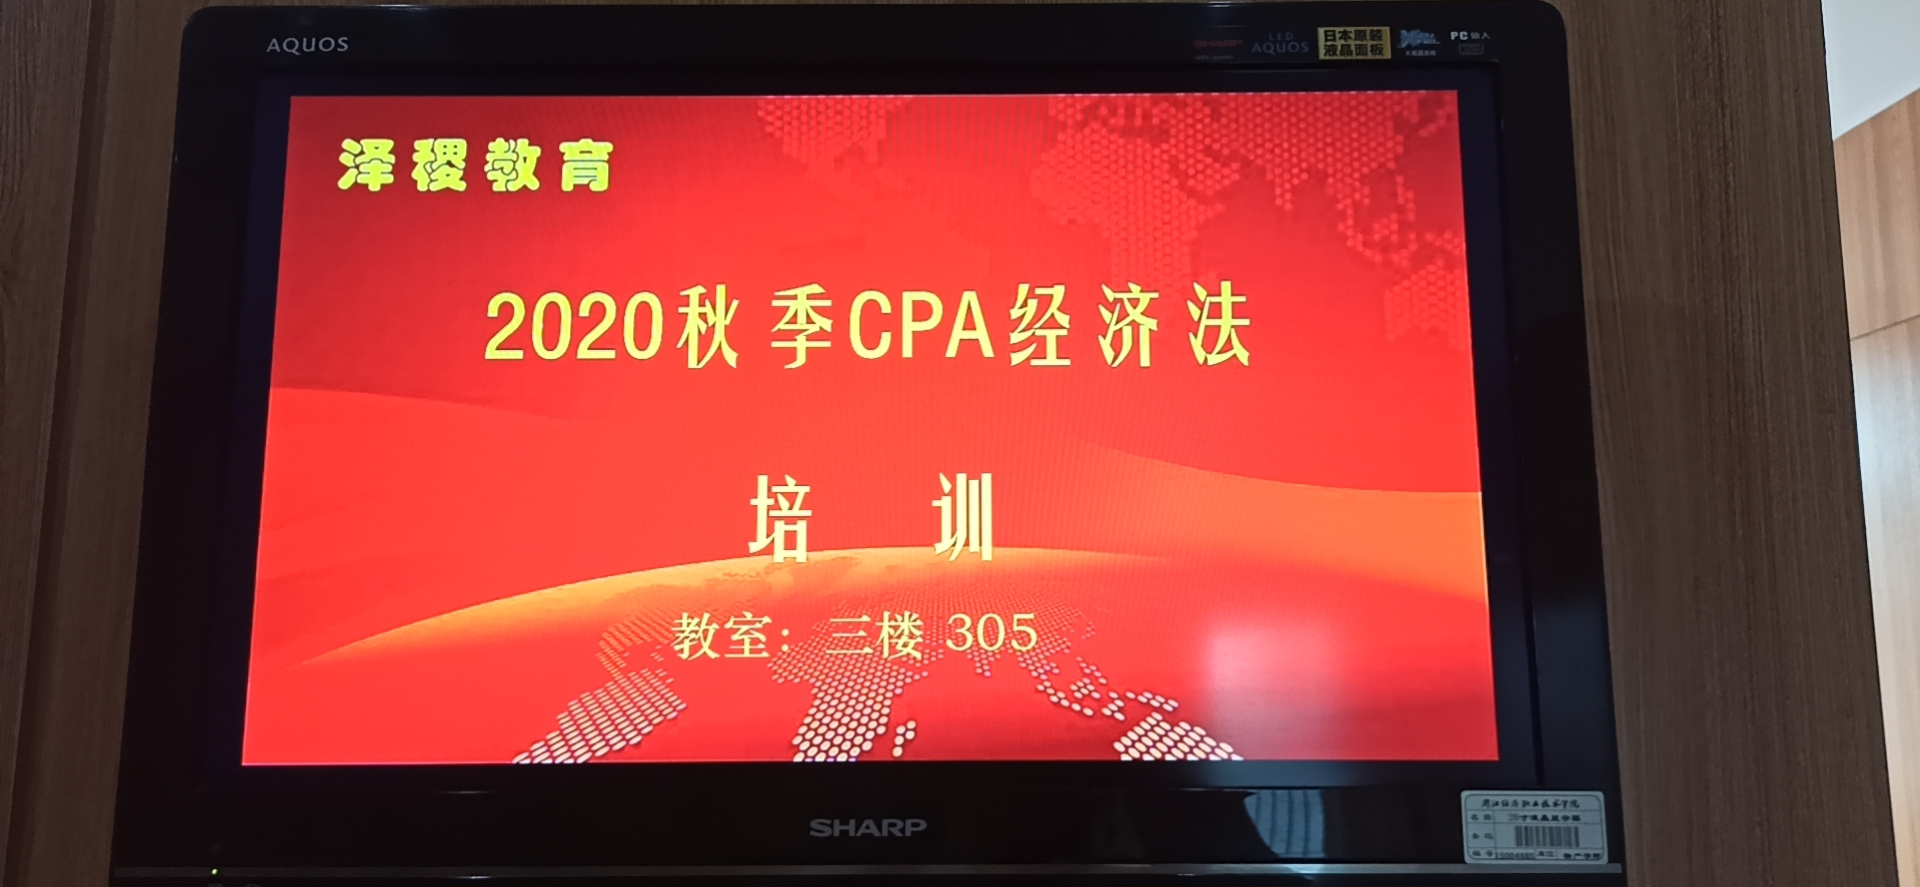 梦想扬帆·青春启航——泽稷教育举行CPA2020年杭州开班仪式